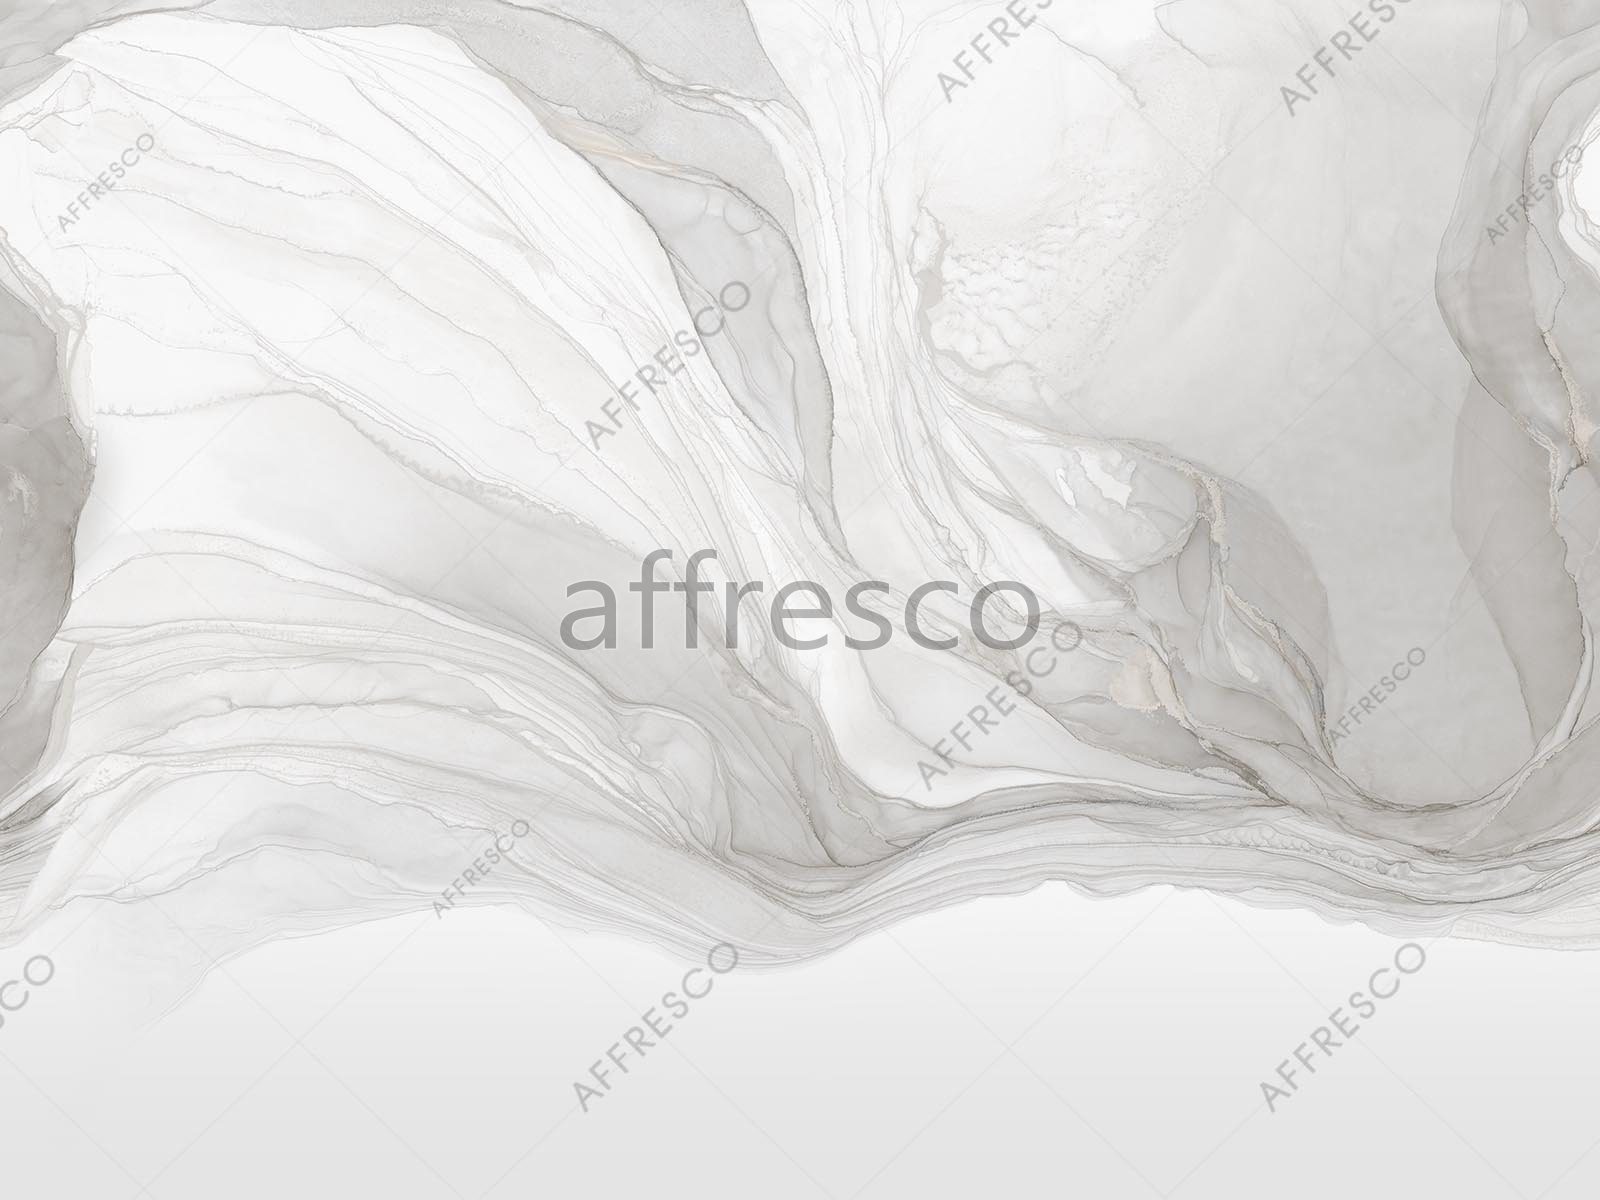 AF2107-COL5 | Emotion Art | Affresco Factory